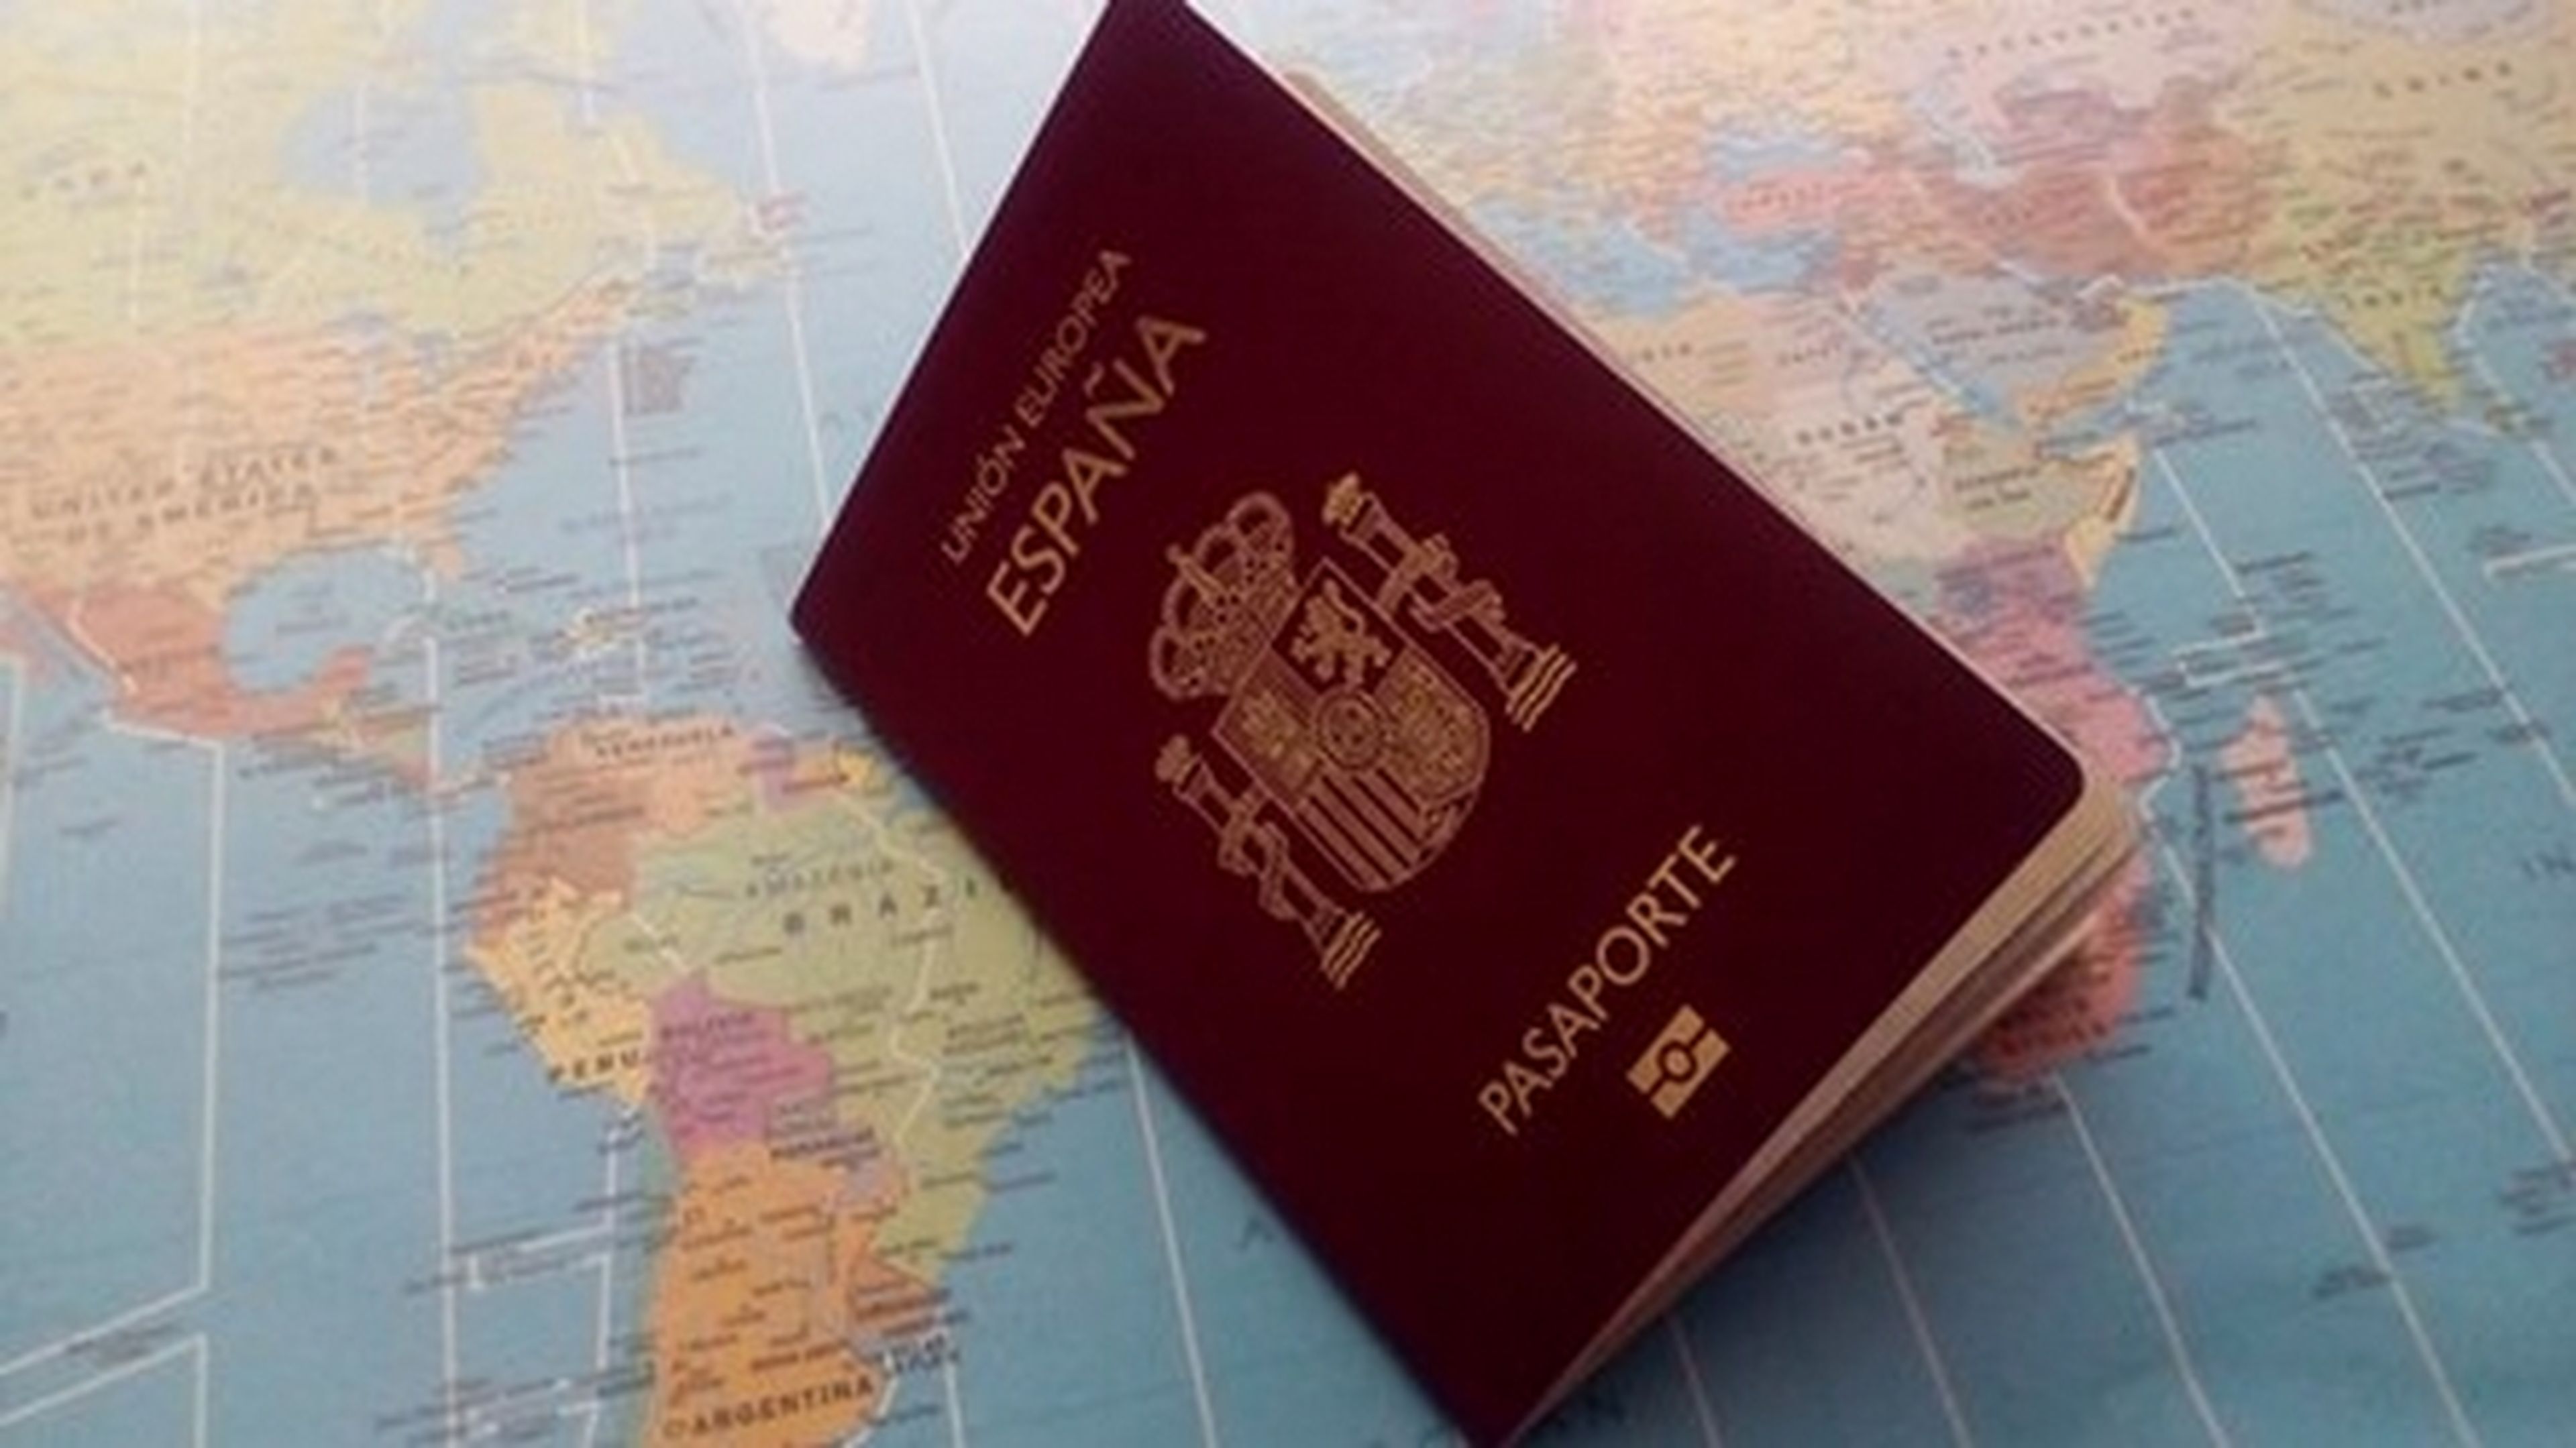 Cómo renovar o solicitar el pasaporte por Internet